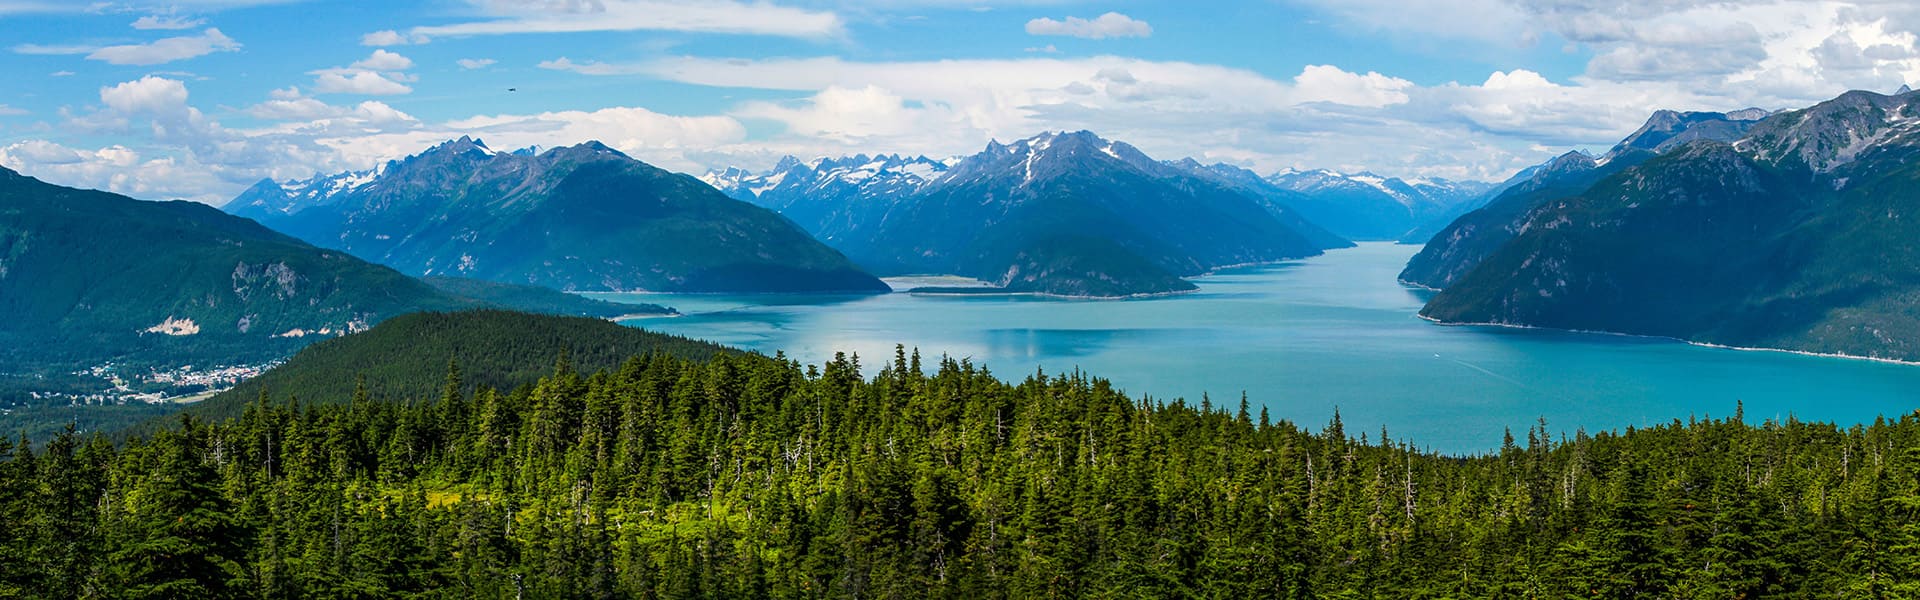 Alaska, viaje de ida y vuelta desde Seattle: glaciar Hubbard, Skagway y Juneau, 10 días